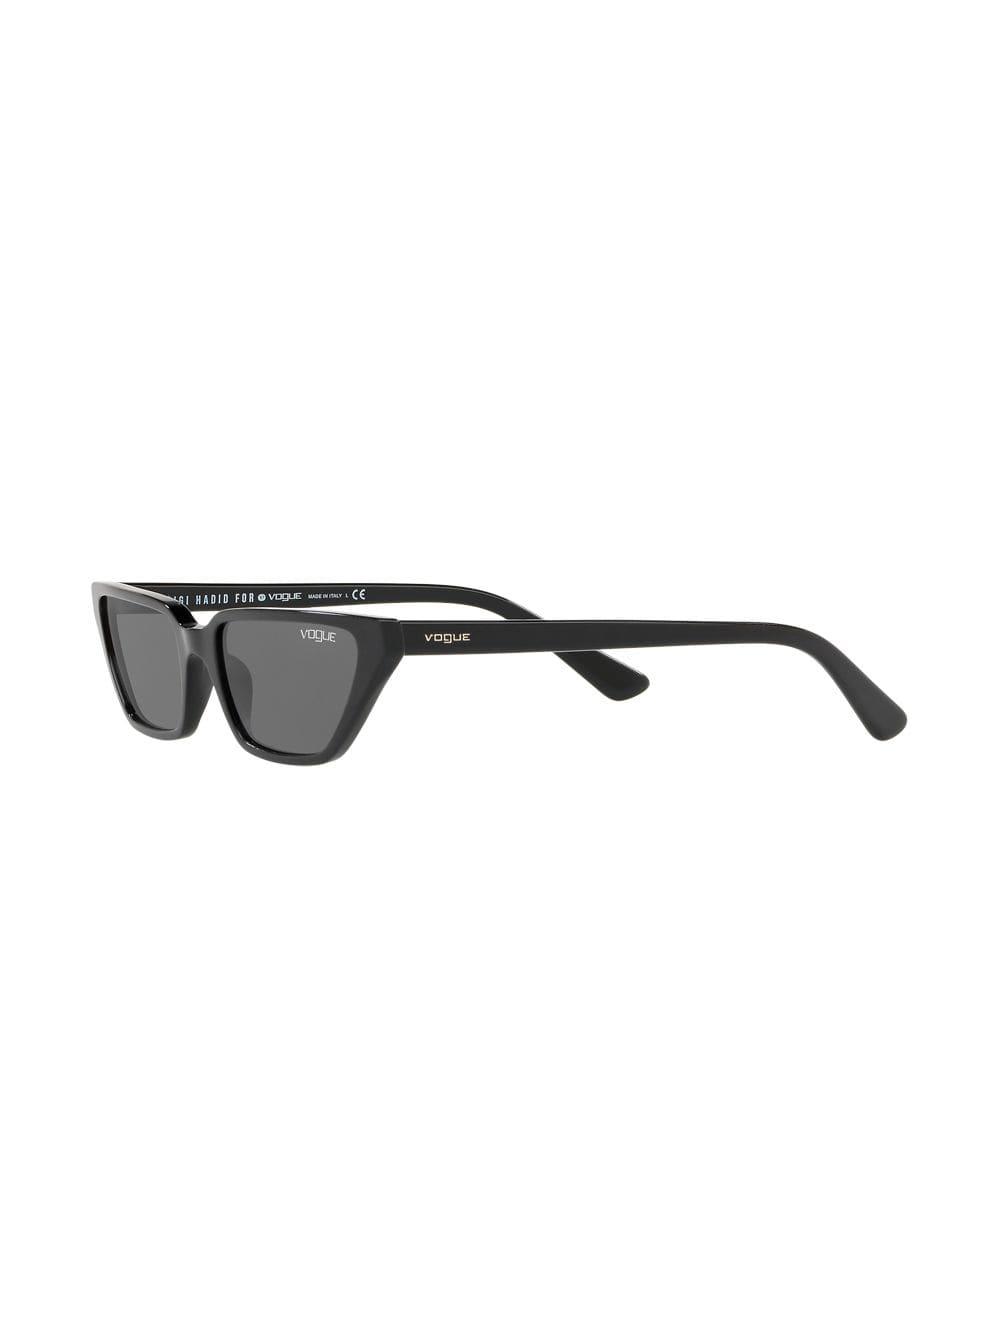 Vogue Eyewear Gigi Hadid Capsule Low Cat-eye Sunglasses in Black | Lyst